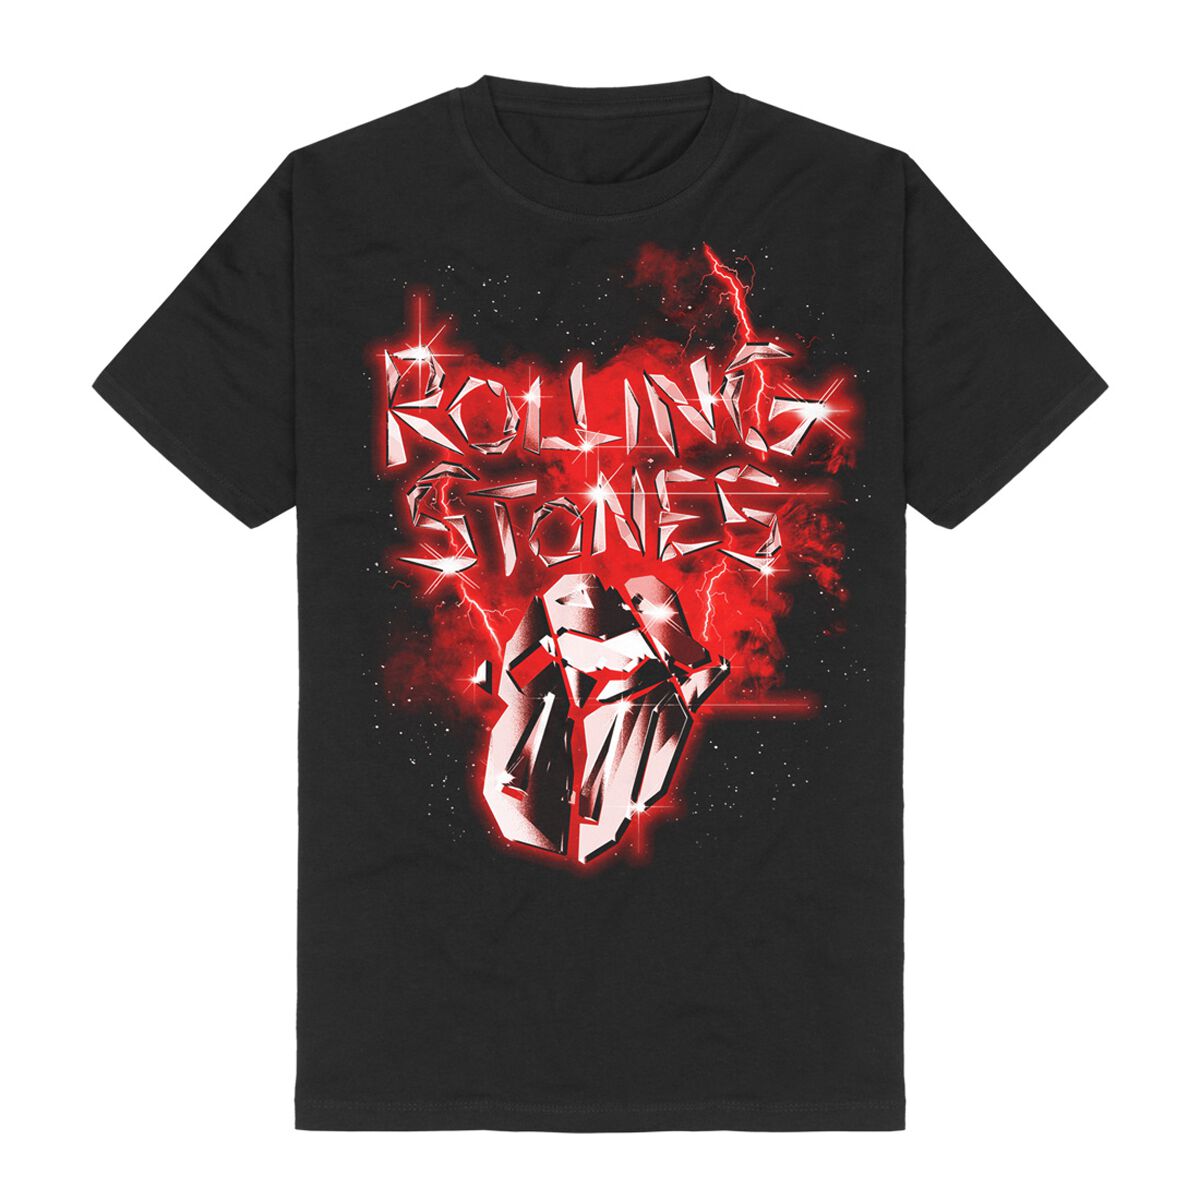 The Rolling Stones T-Shirt - Hackney Diamonds Smoke - S bis 5XL - für Männer - Größe 4XL - schwarz  - Lizenziertes Merchandise!